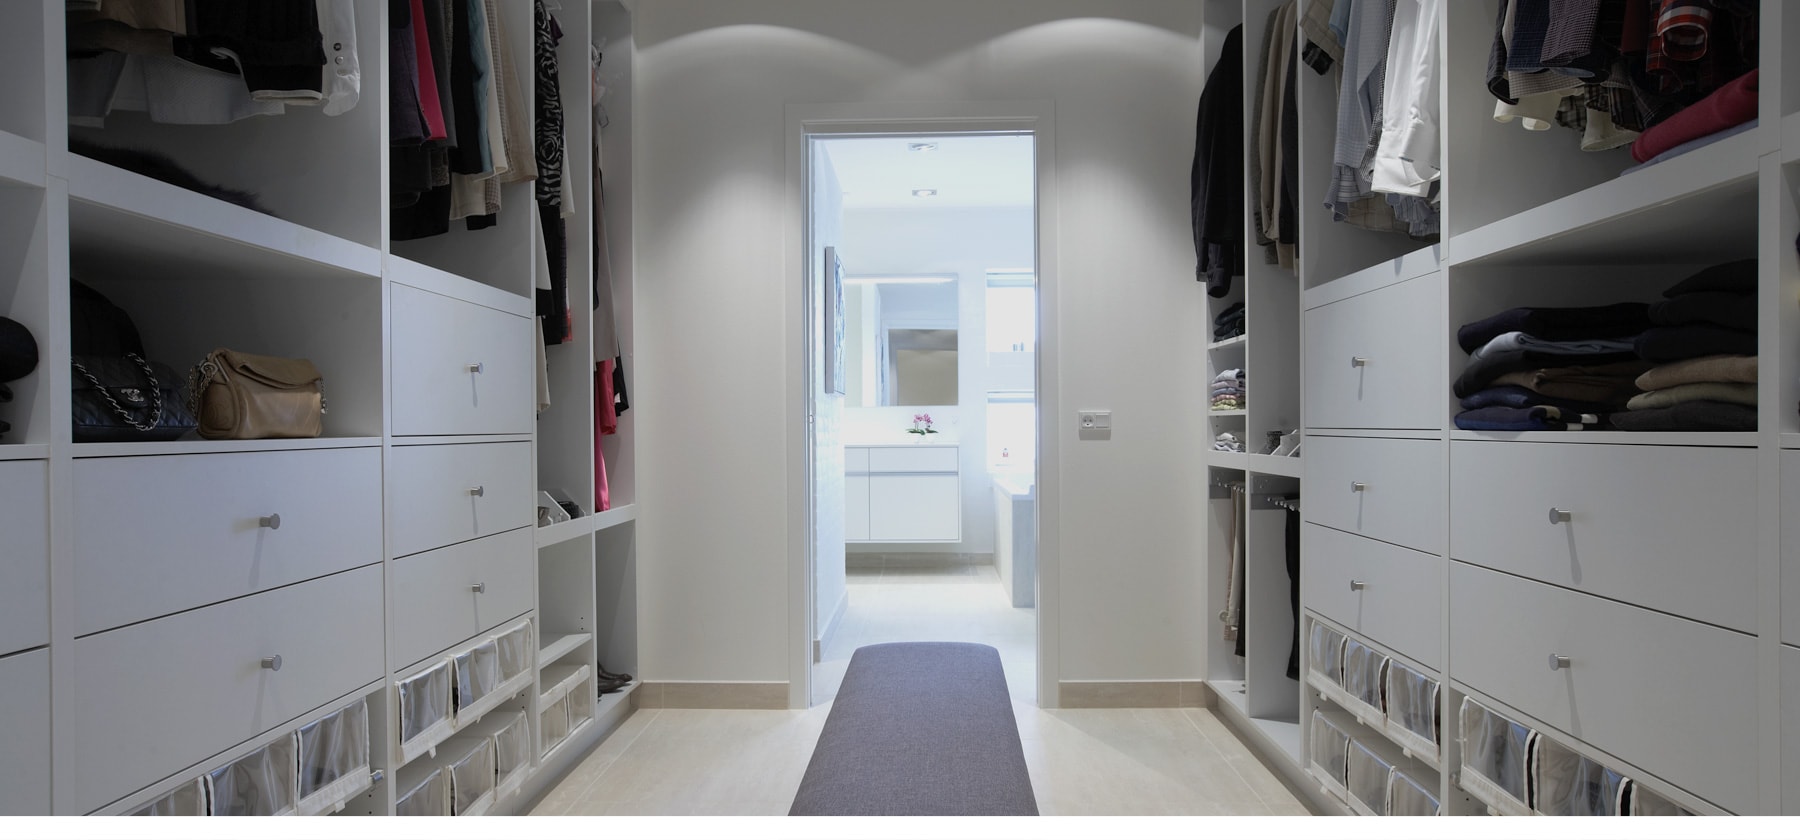 WALK-IN-CLOSET- go all in <br> with wardrobe interior